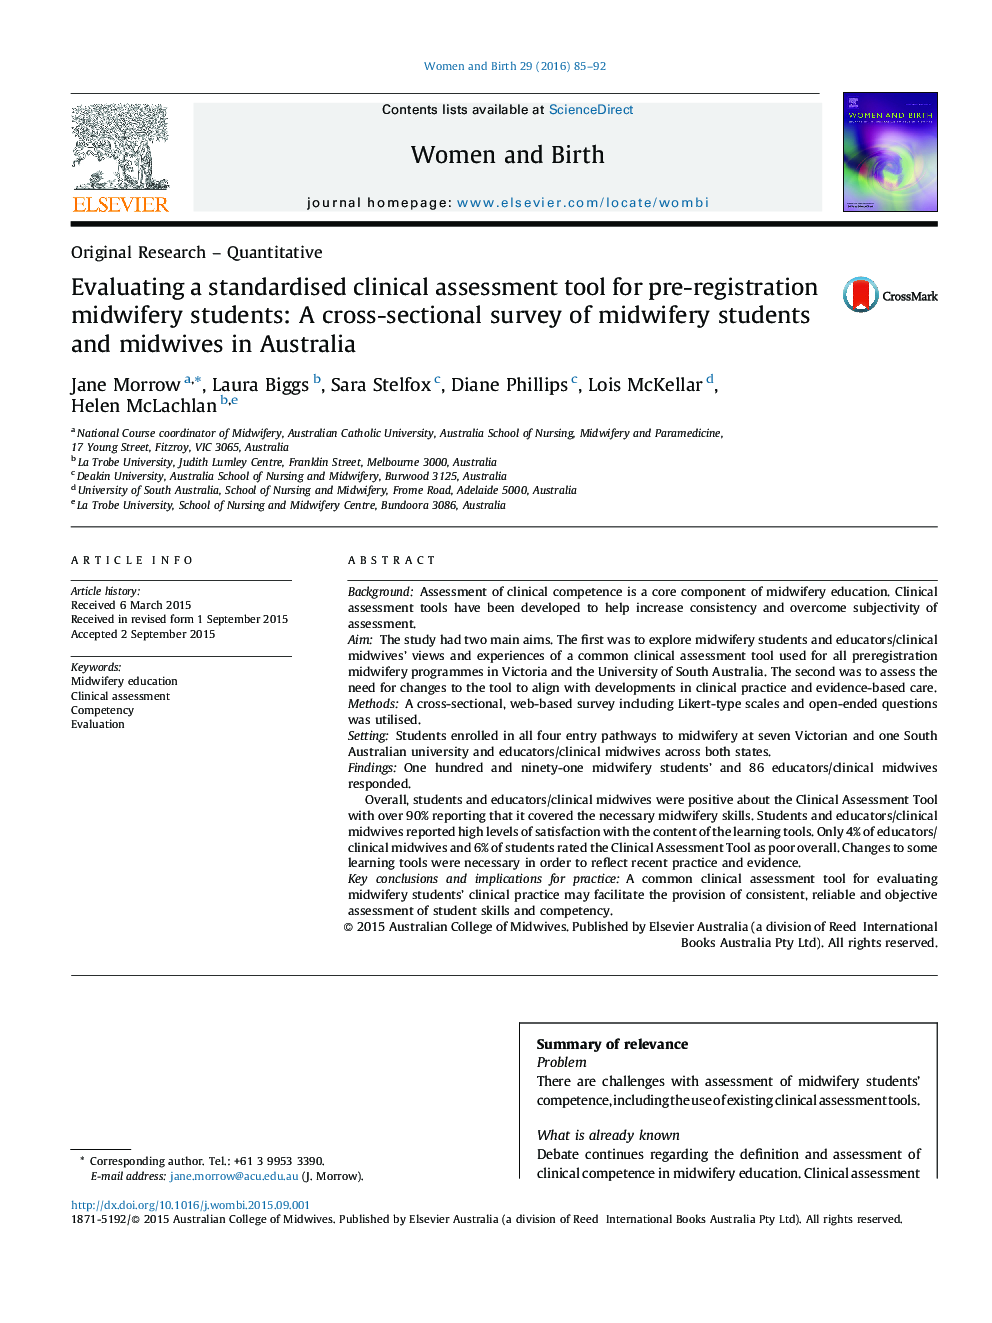 ارزیابی یک ابزار ارزیابی بالینی استاندارد برای دانشجویان مامایی قبل از ثبت نام: یک مطالعه مقطعی از دانشجویان مامایی و ماماها در استرالیا